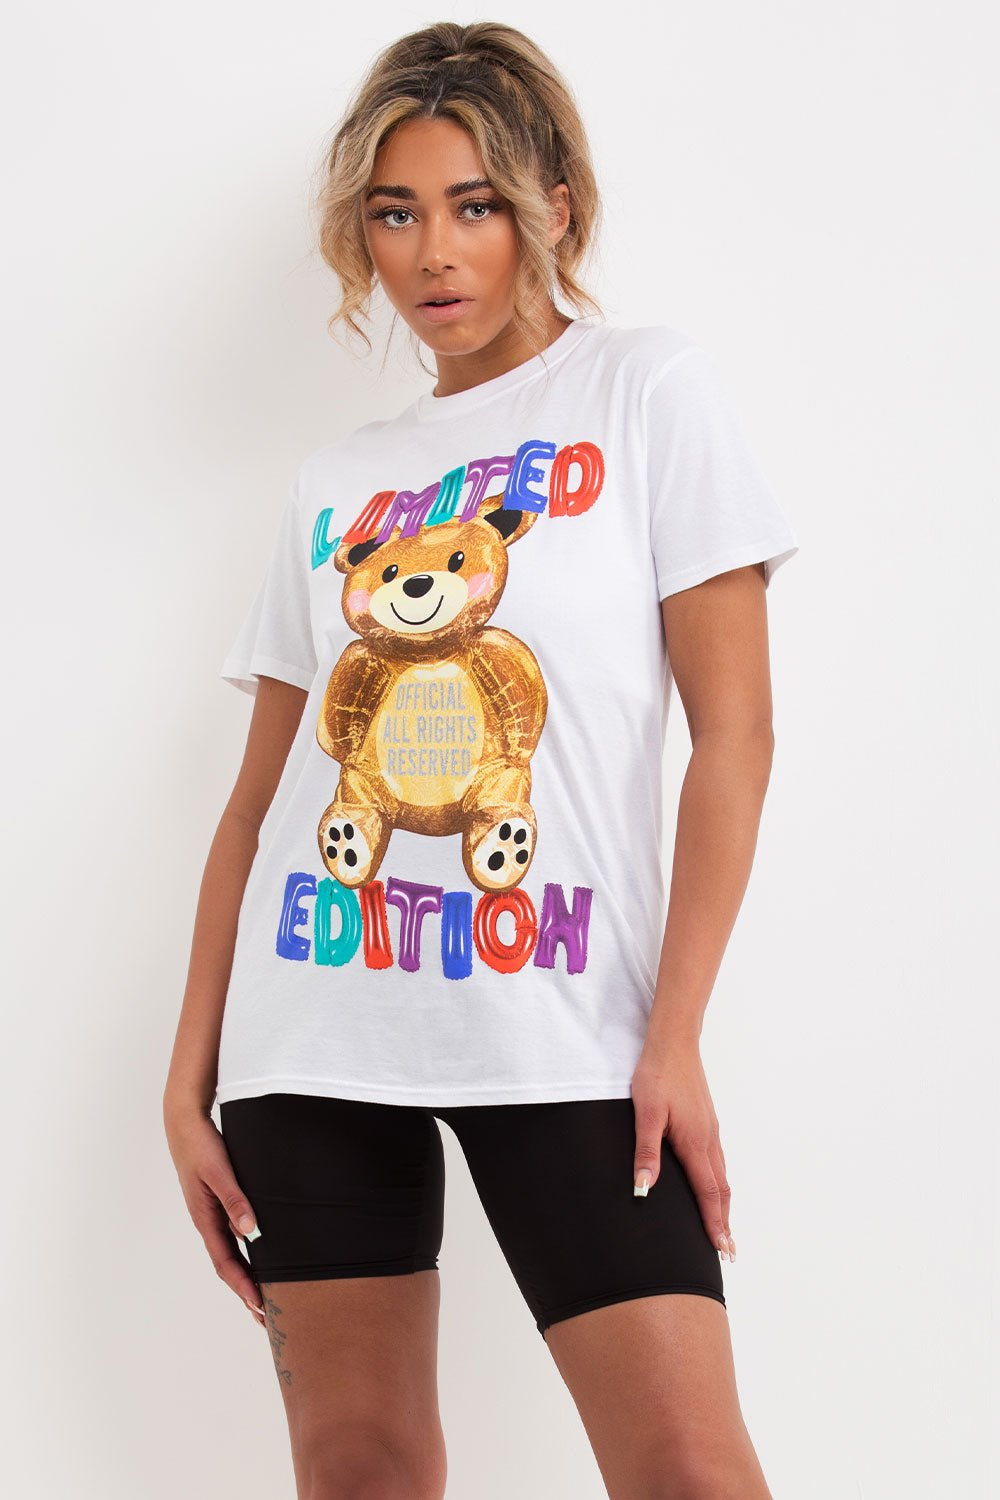 limited edition teddy bear t shirt womens